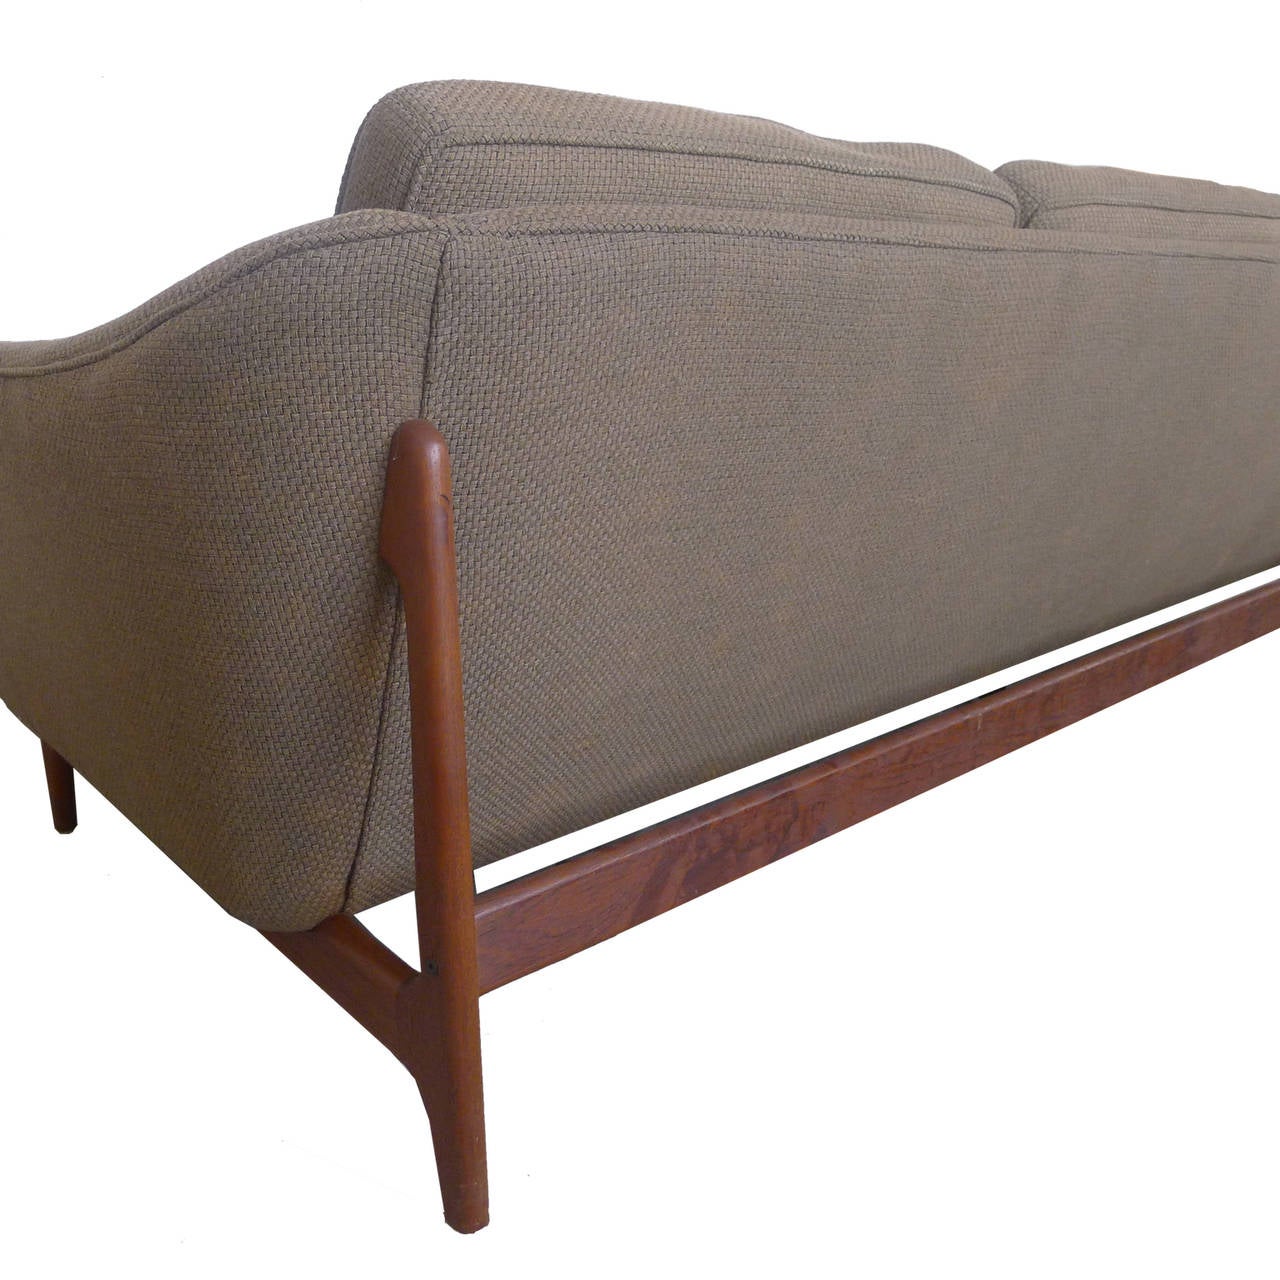 Mid-20th Century Teak Framed Dux Sofa designed by Folke Ohlsson